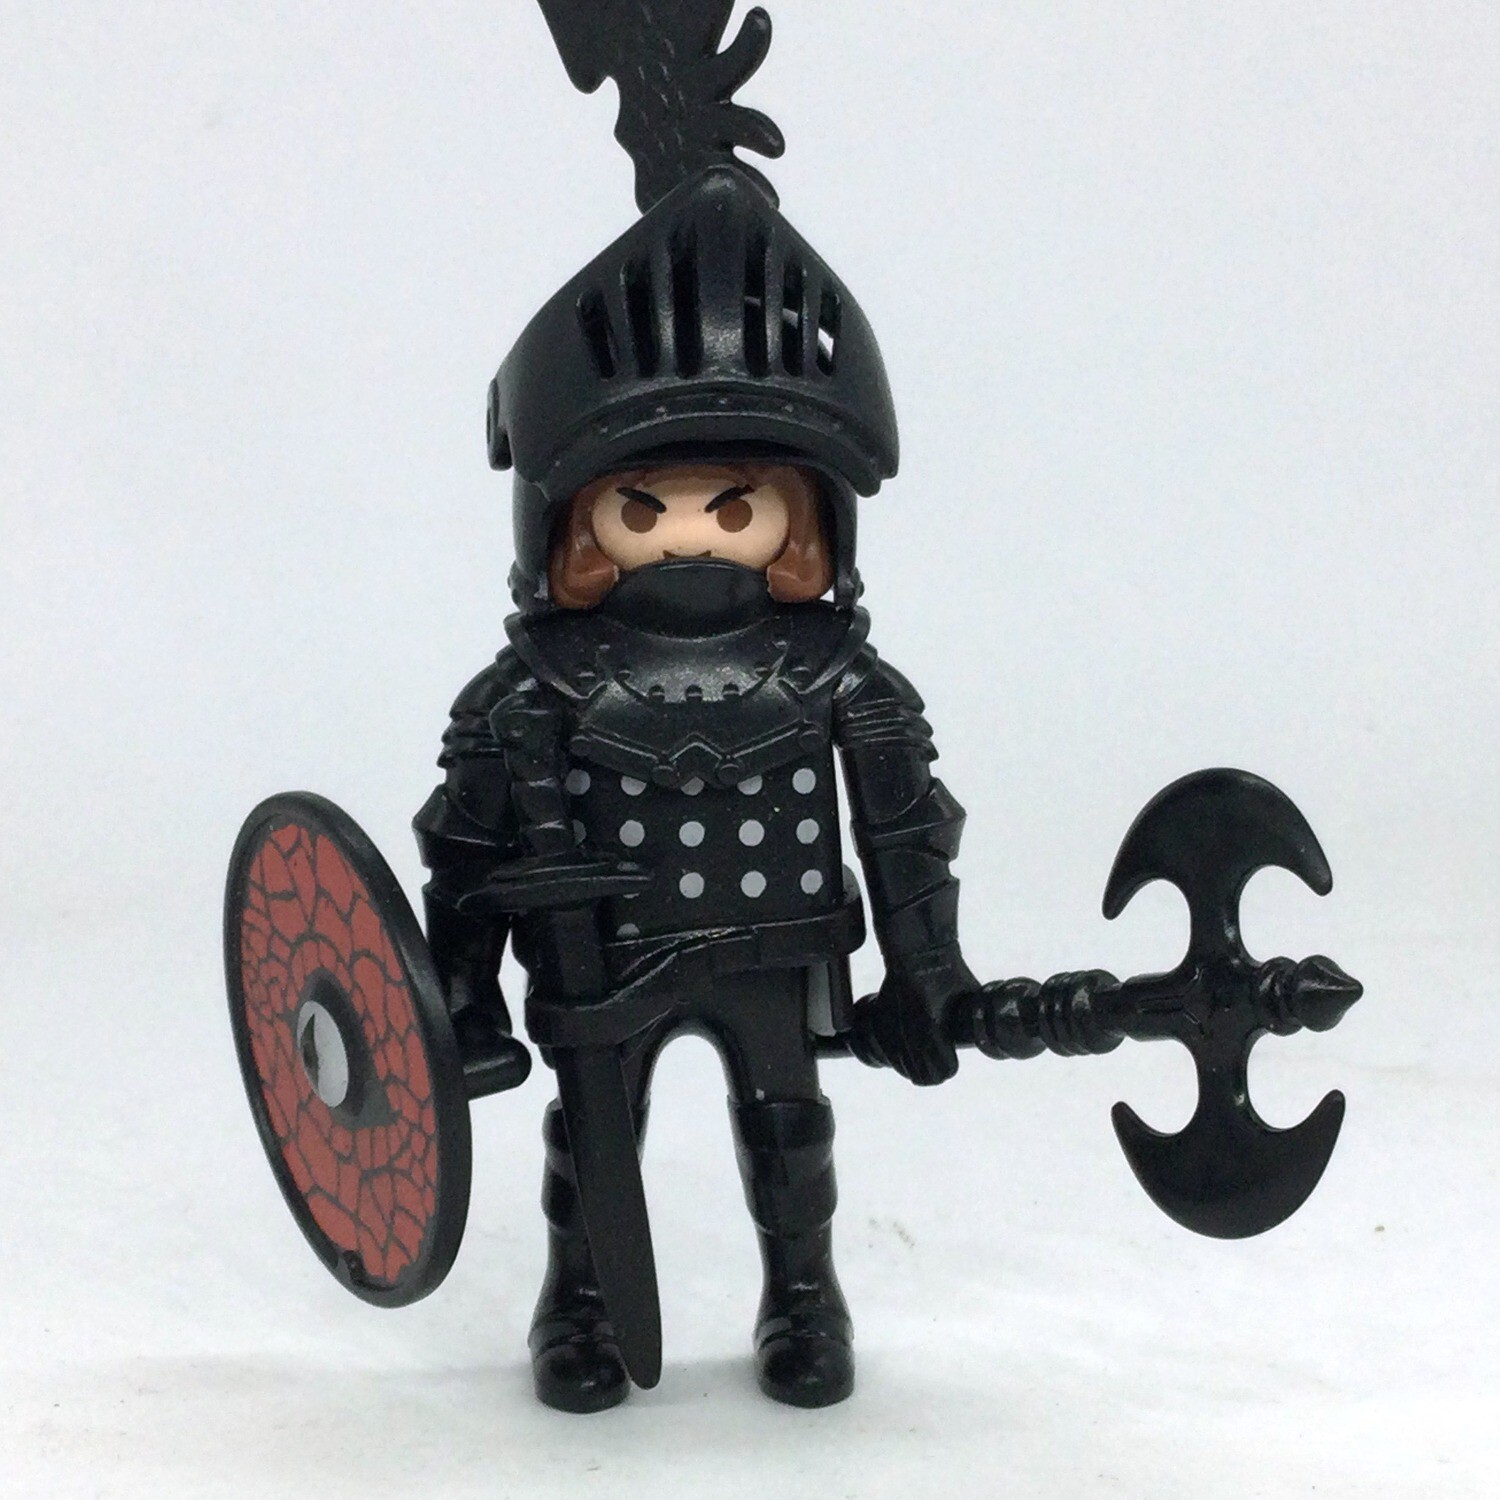 PLAYMOBIL personnage = un chevalier, buste coloris noir et gris